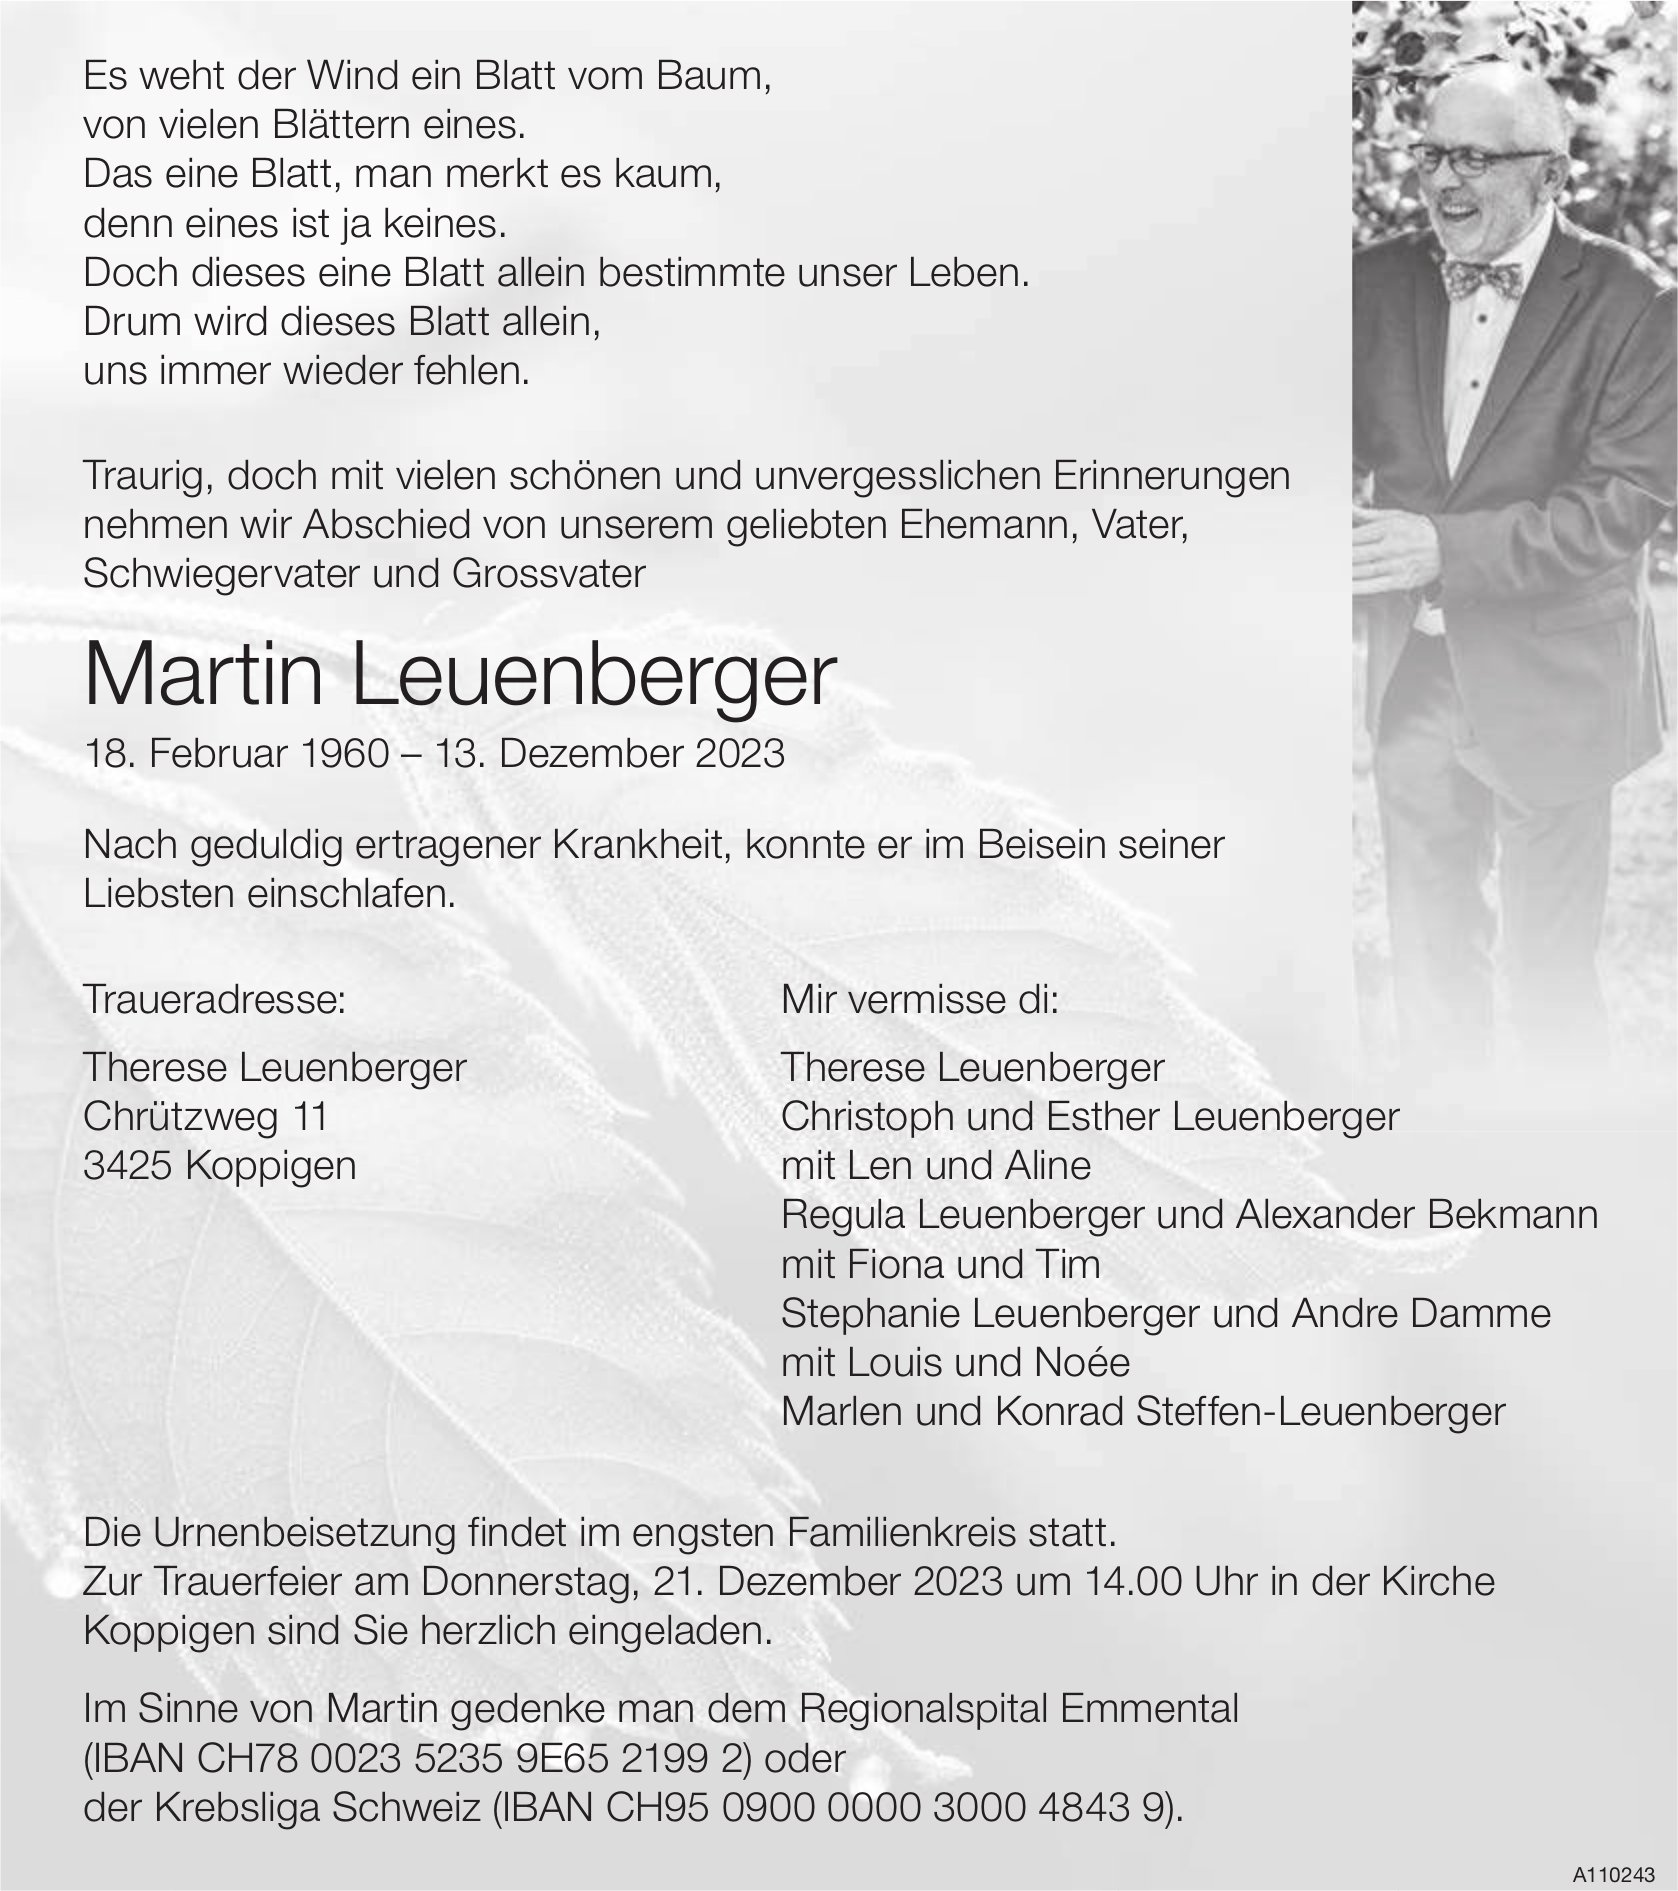 Martin Leuenberger, Dezember 2023 / TA